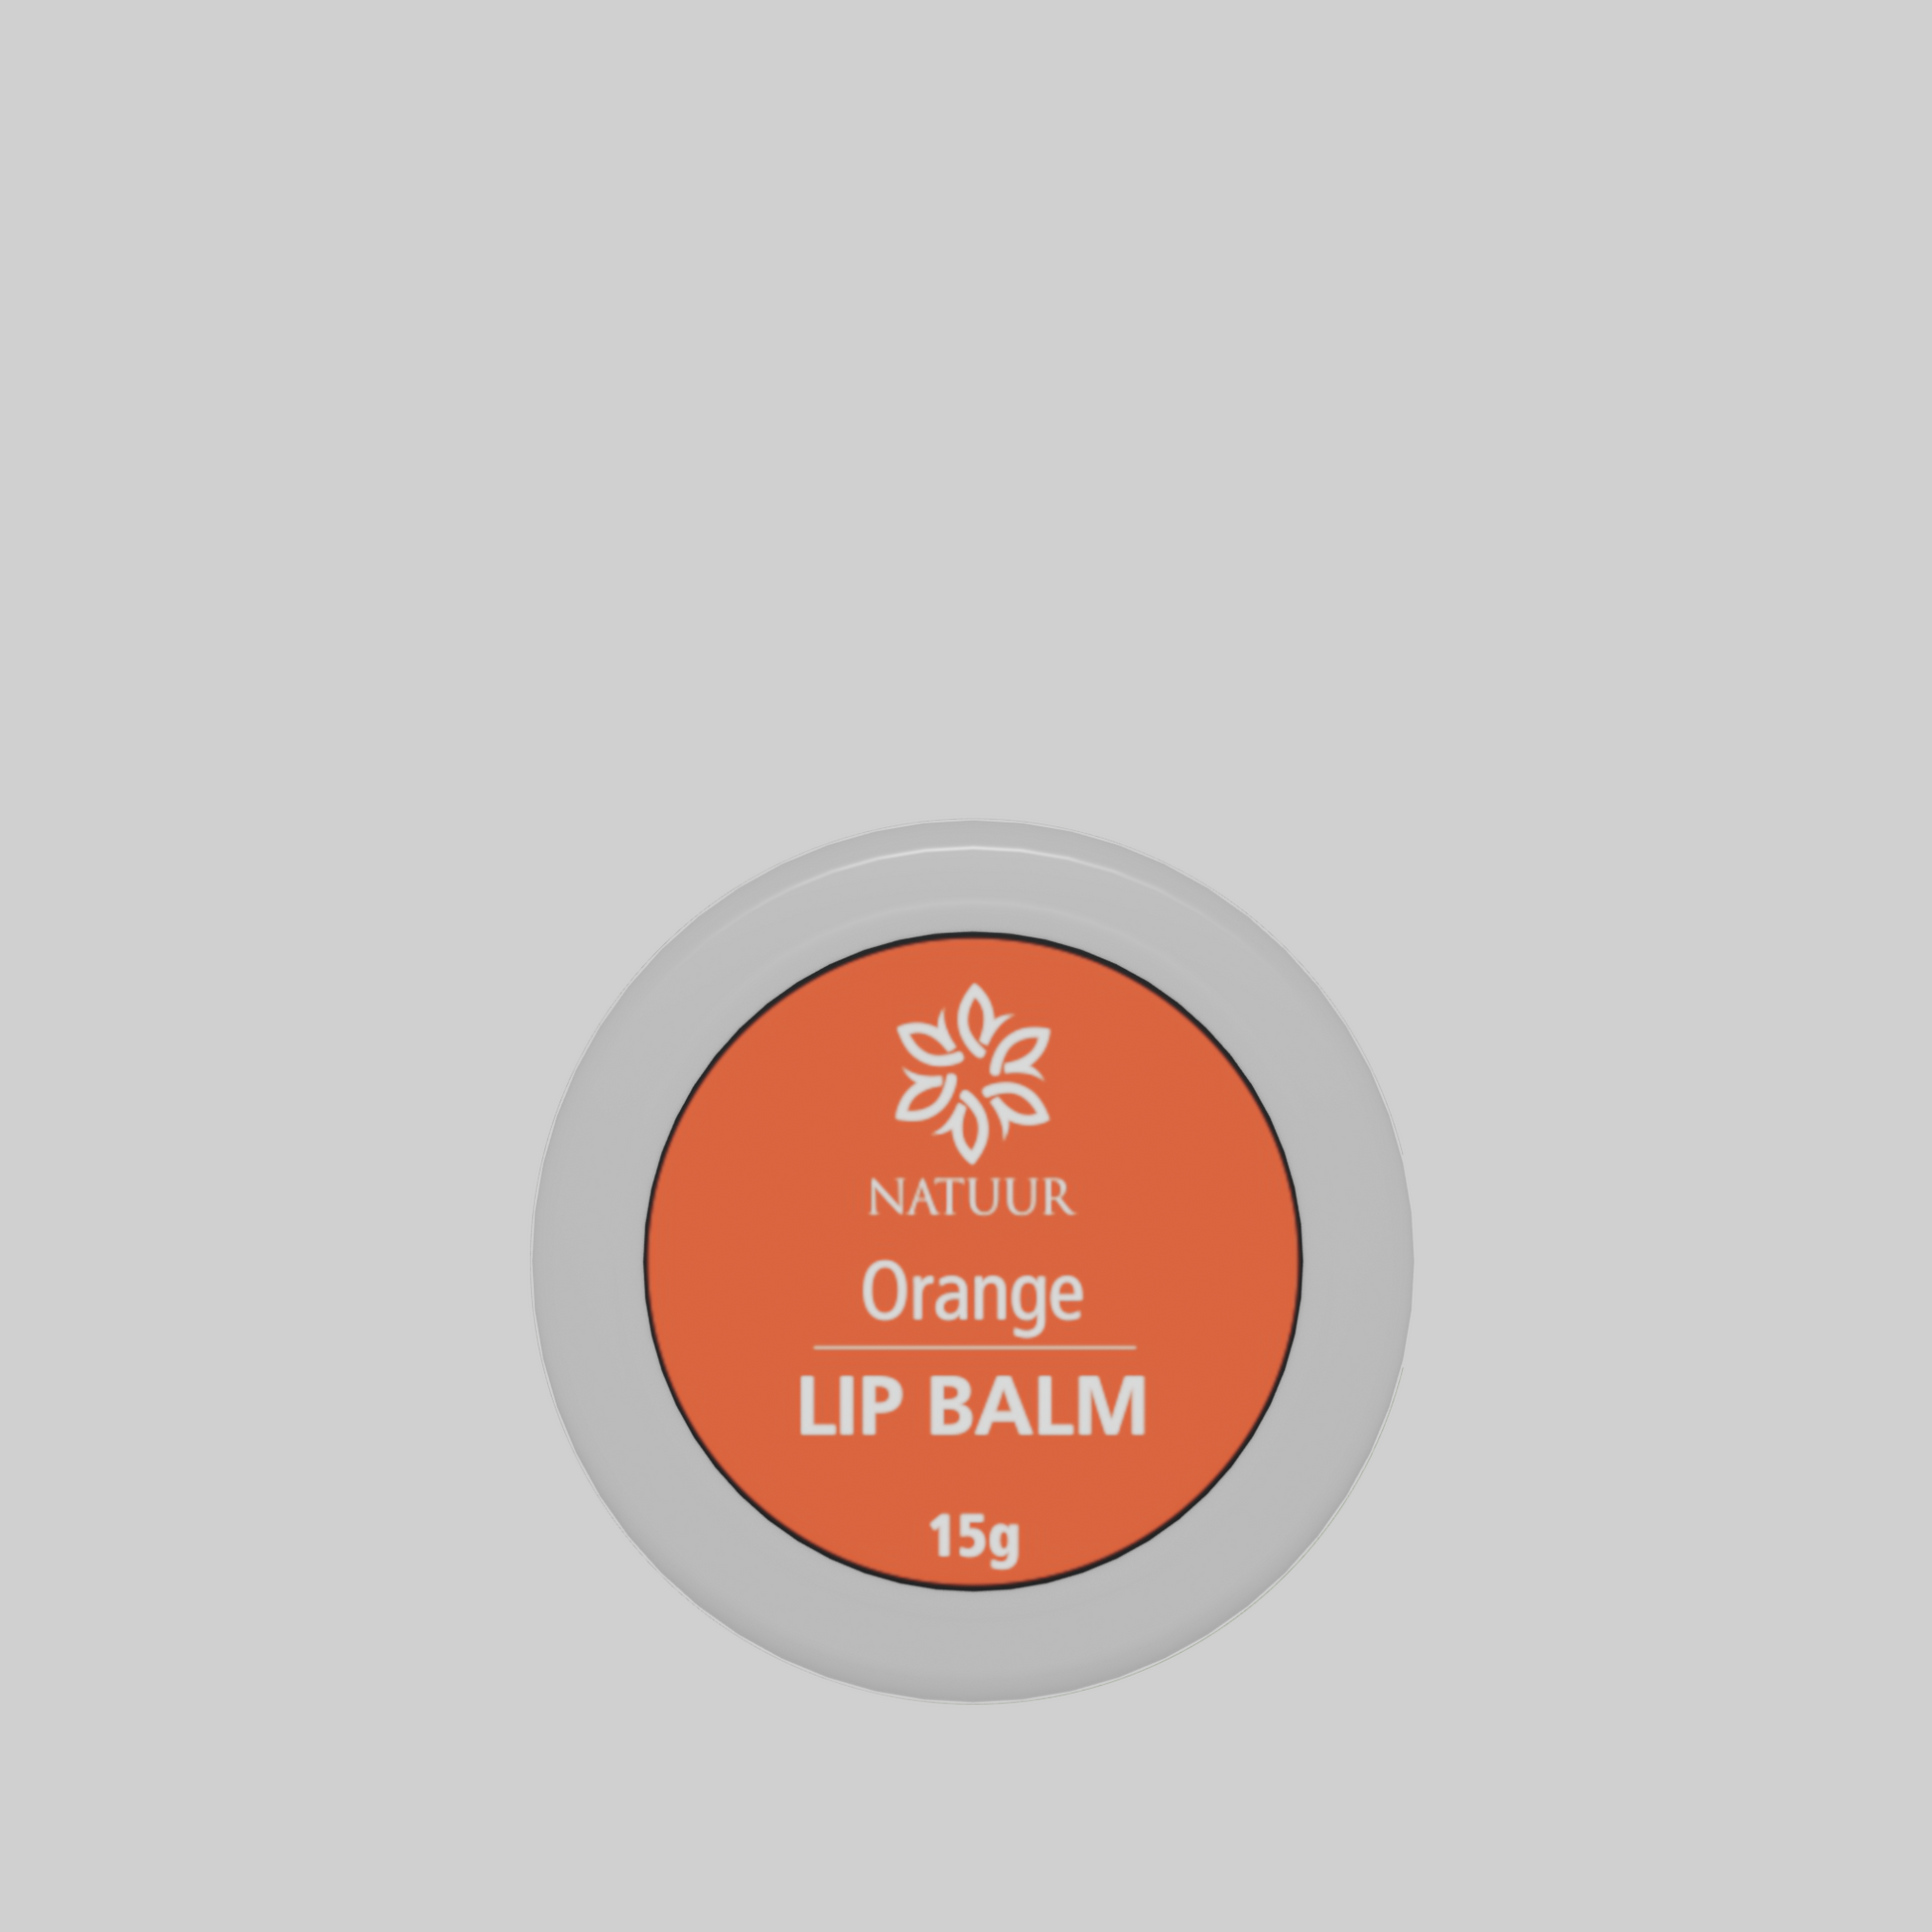 Natuur Lip Balm - Orange 15gms - Natuur.in